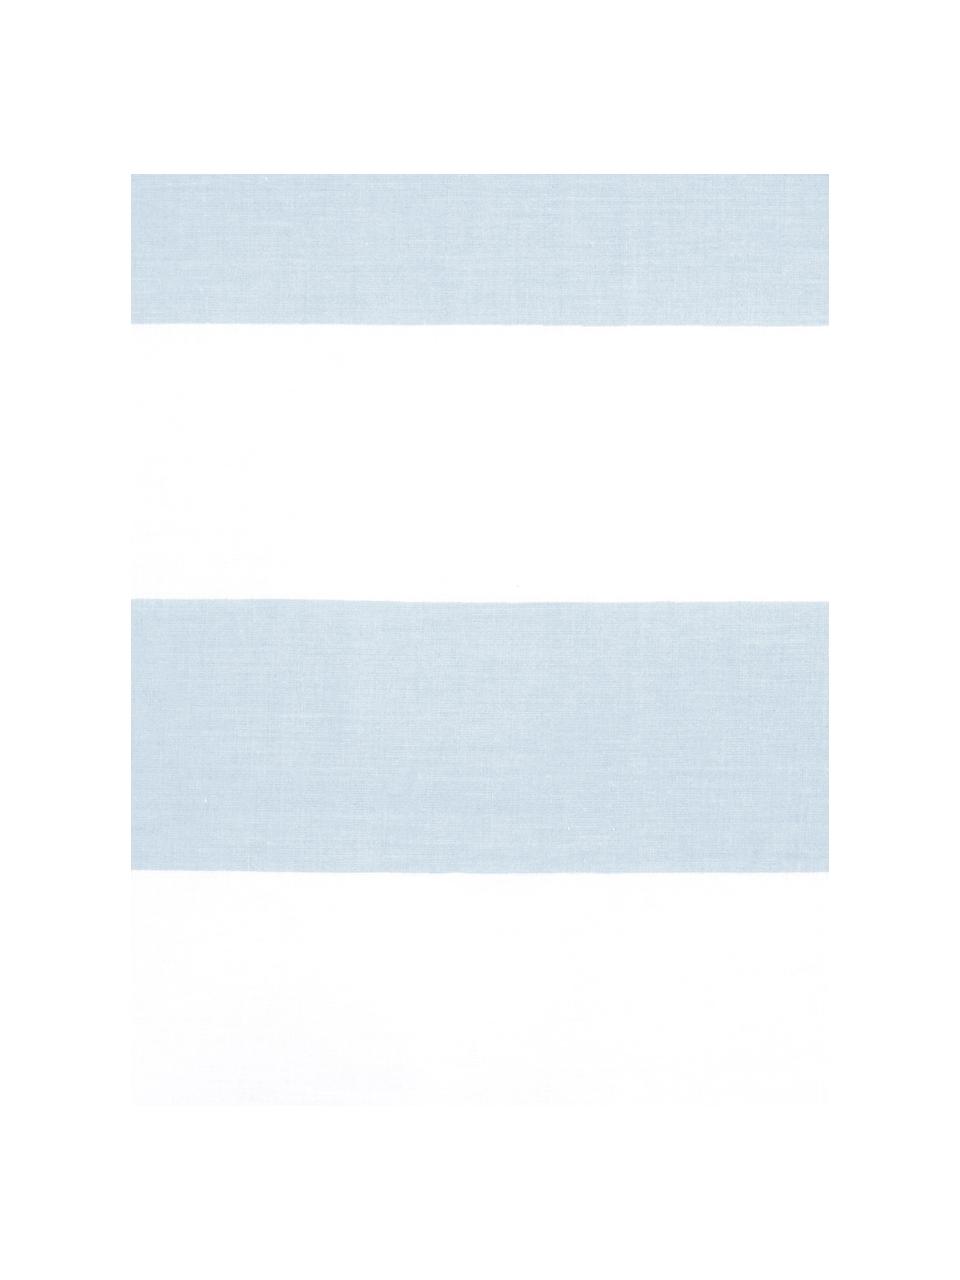 Gestreifte Baumwoll-Wendebettwäsche Lorena, Webart: Renforcé Fadendichte 144 , Weiß, Hellblau, 135 x 200 cm + 1 Kissen 80 x 80 cm